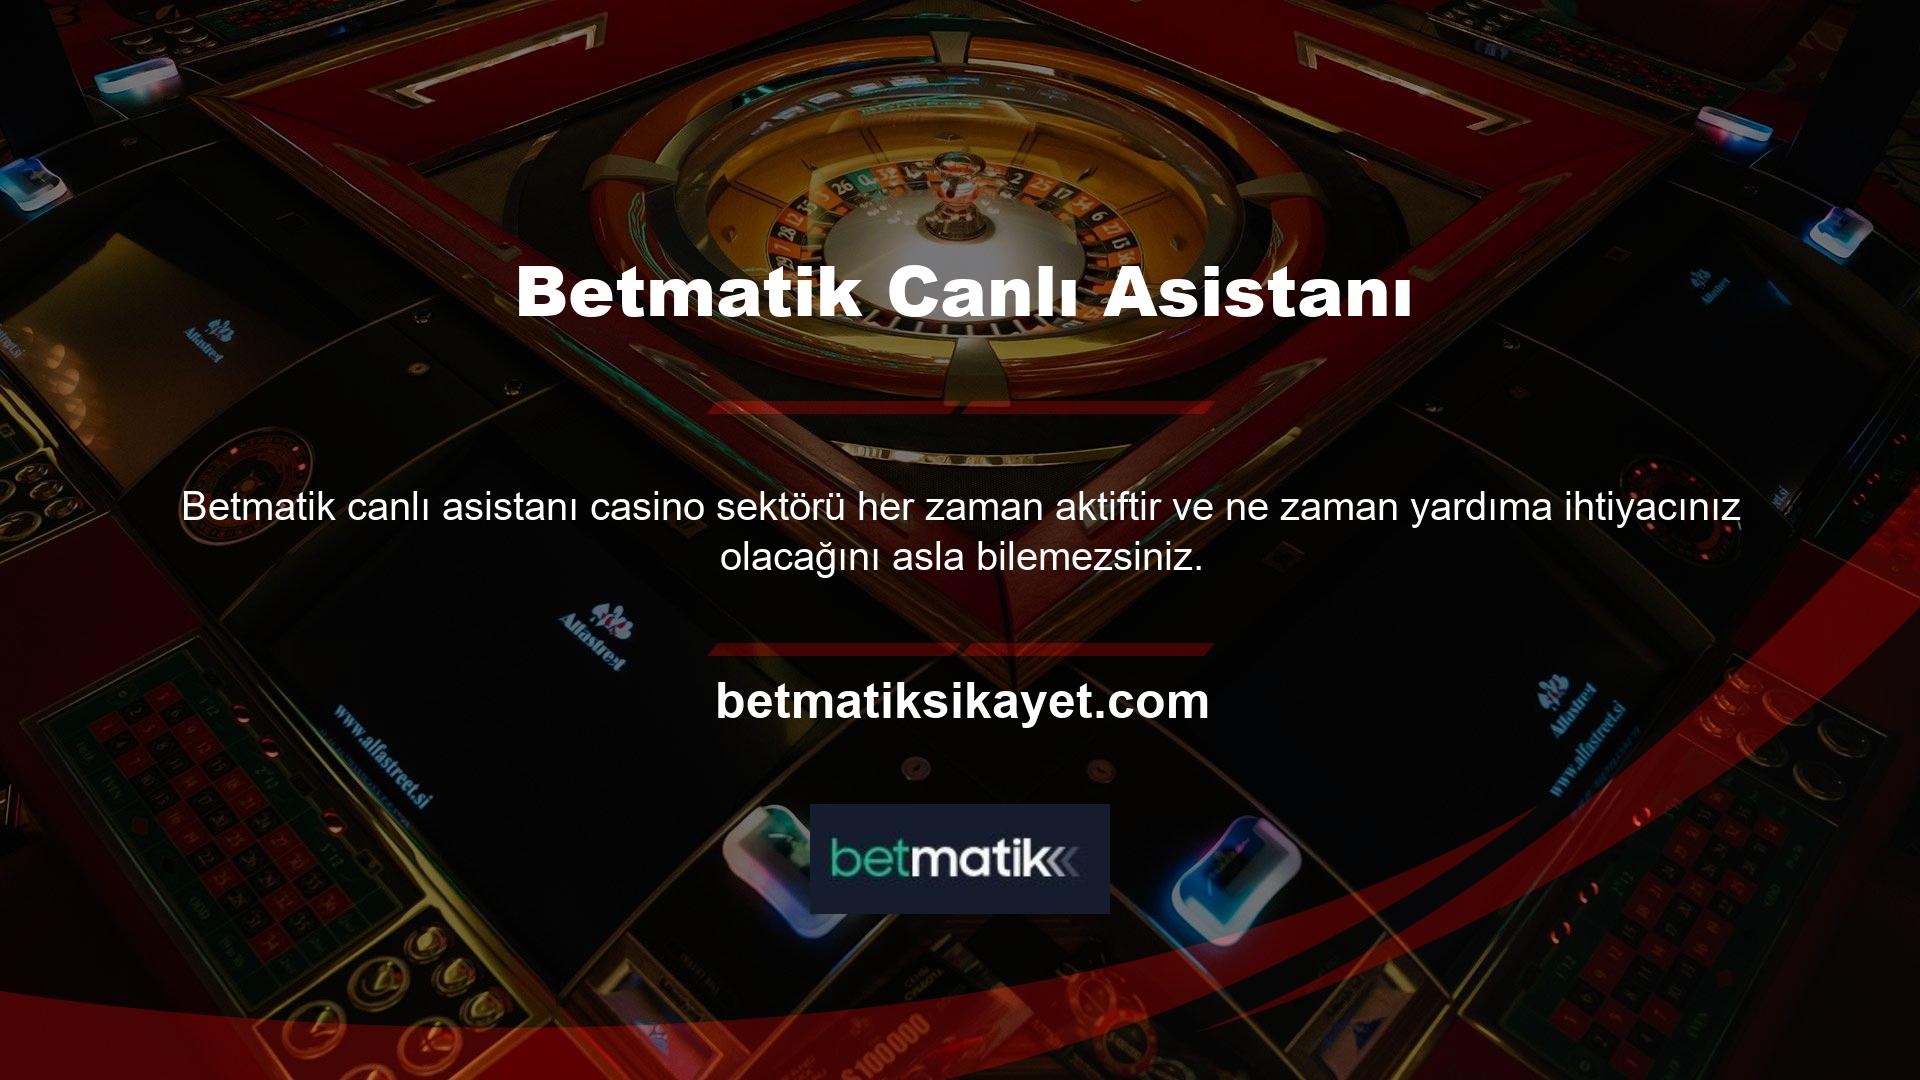 Bu nedenle Betmatik casino desteği ile 7/24 Betmatik almak çok önemlidir